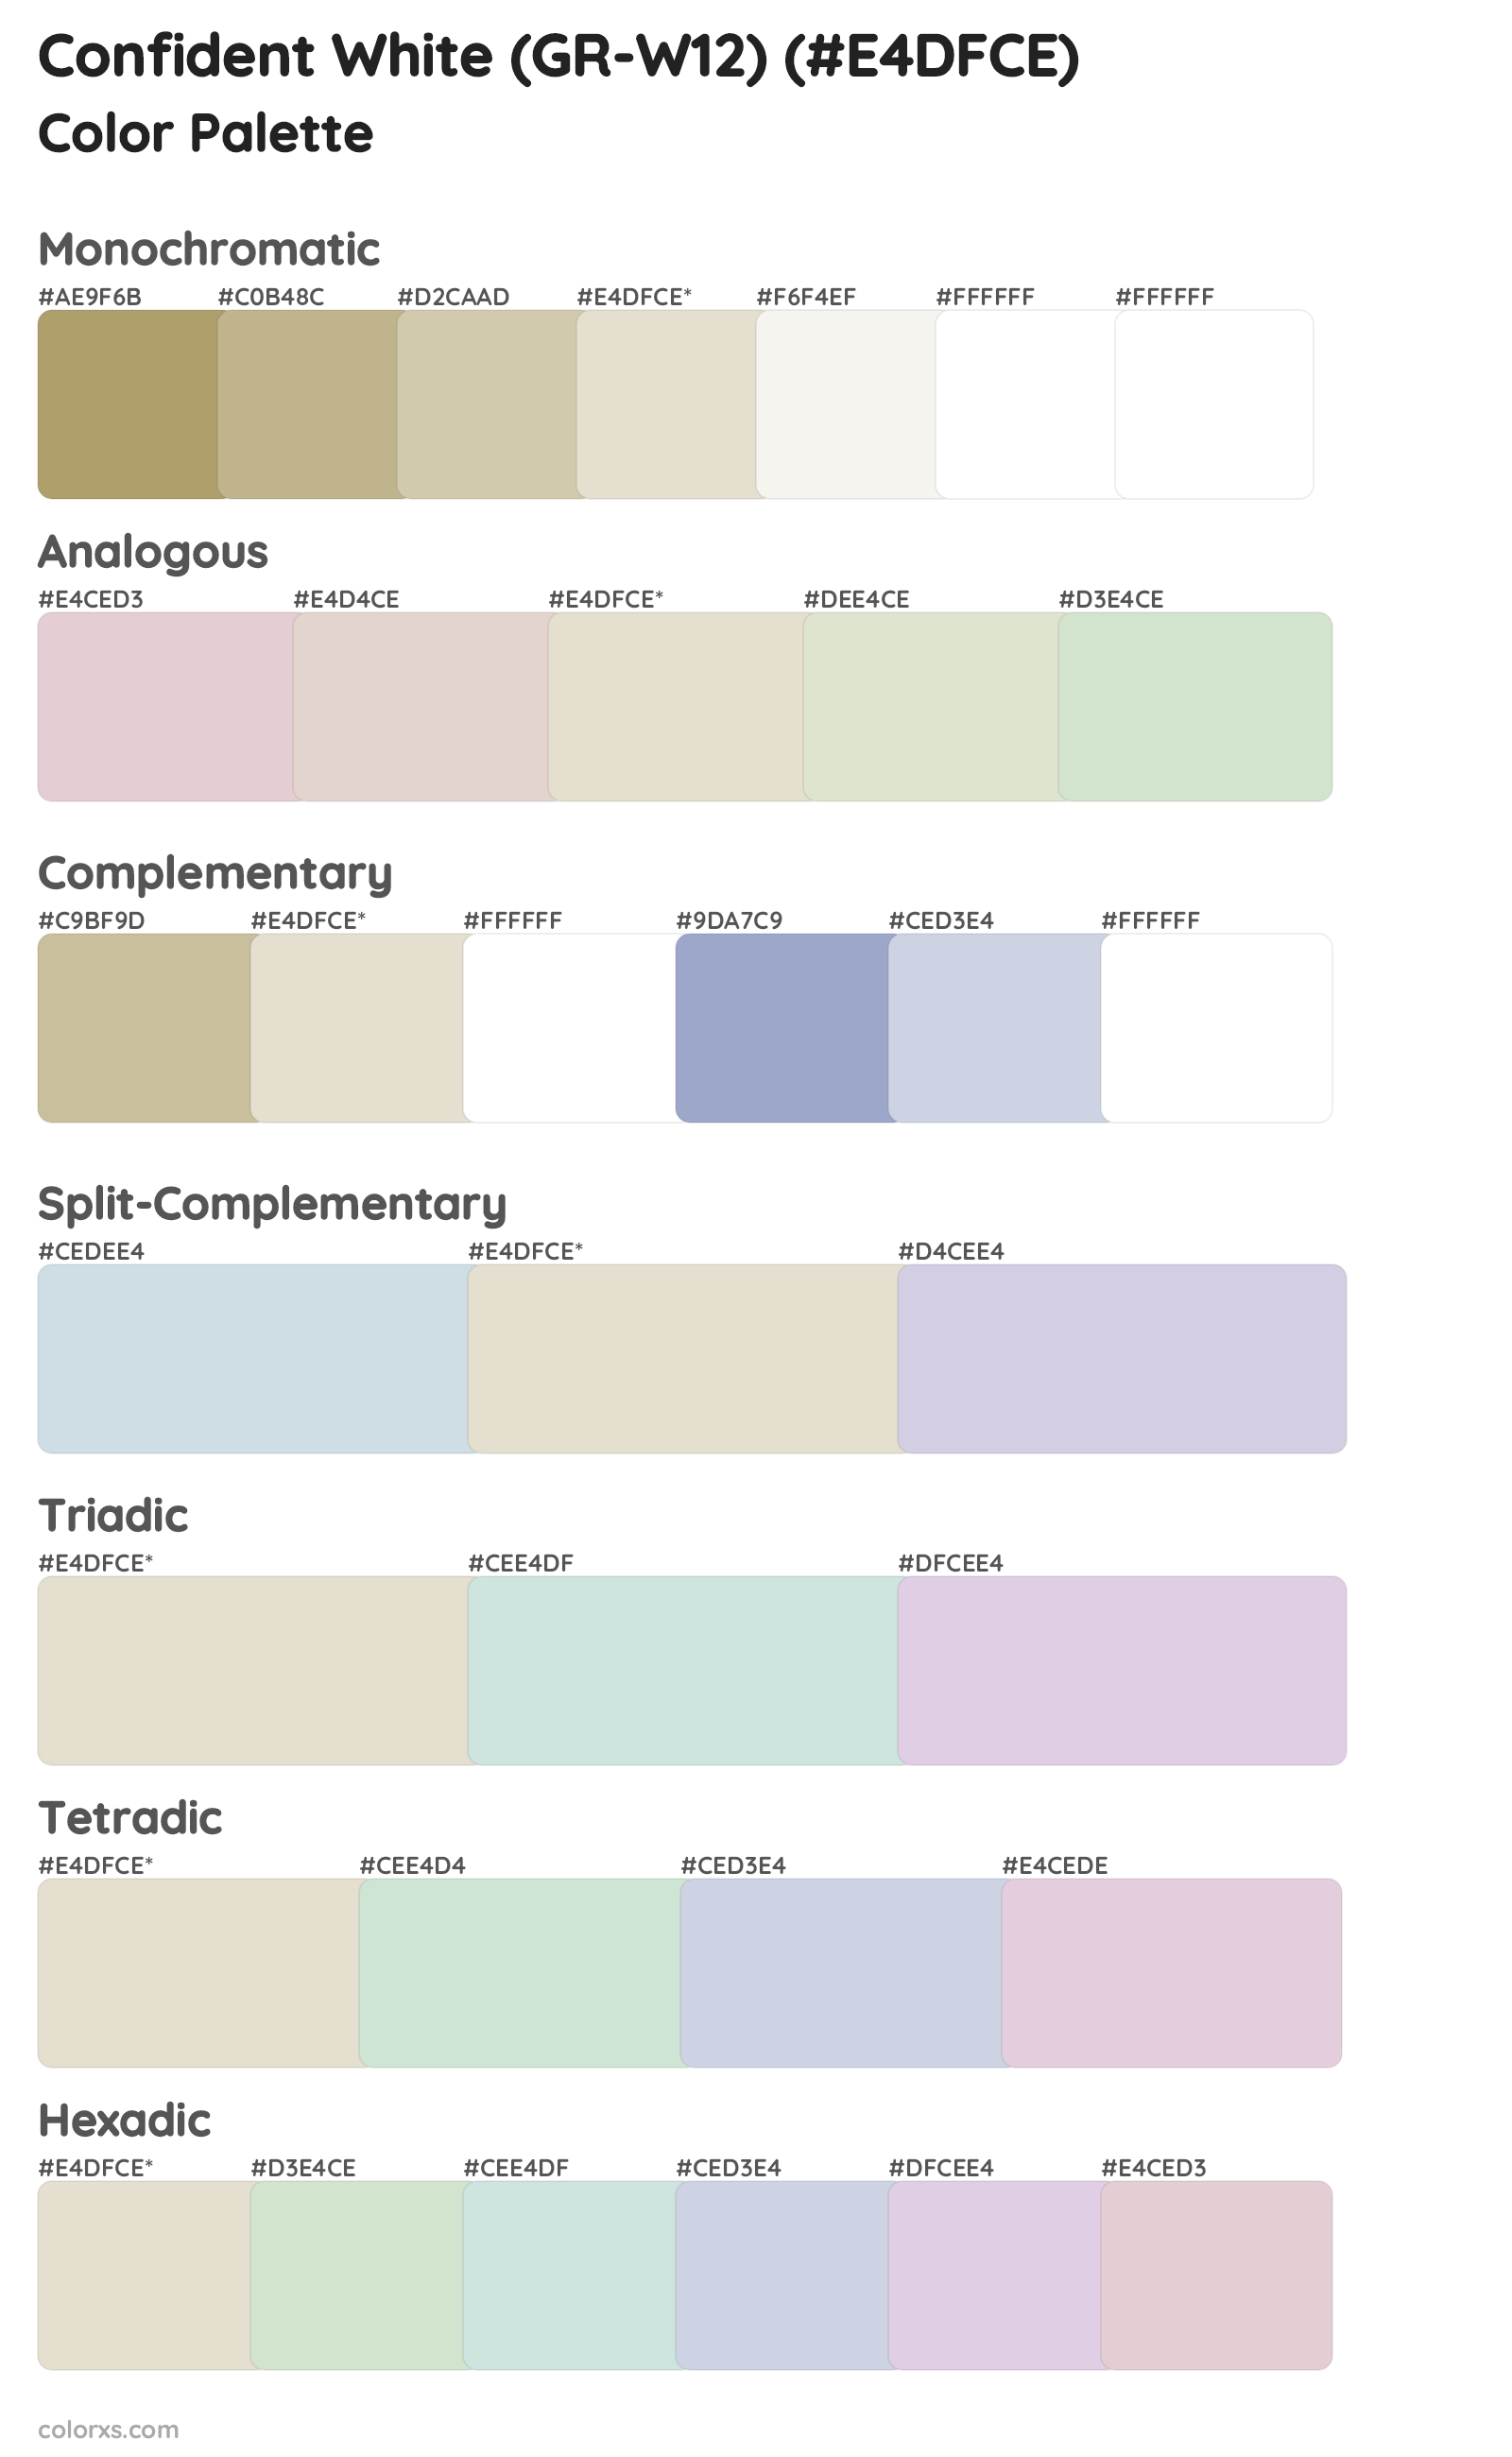 Confident White (GR-W12) Color Scheme Palettes